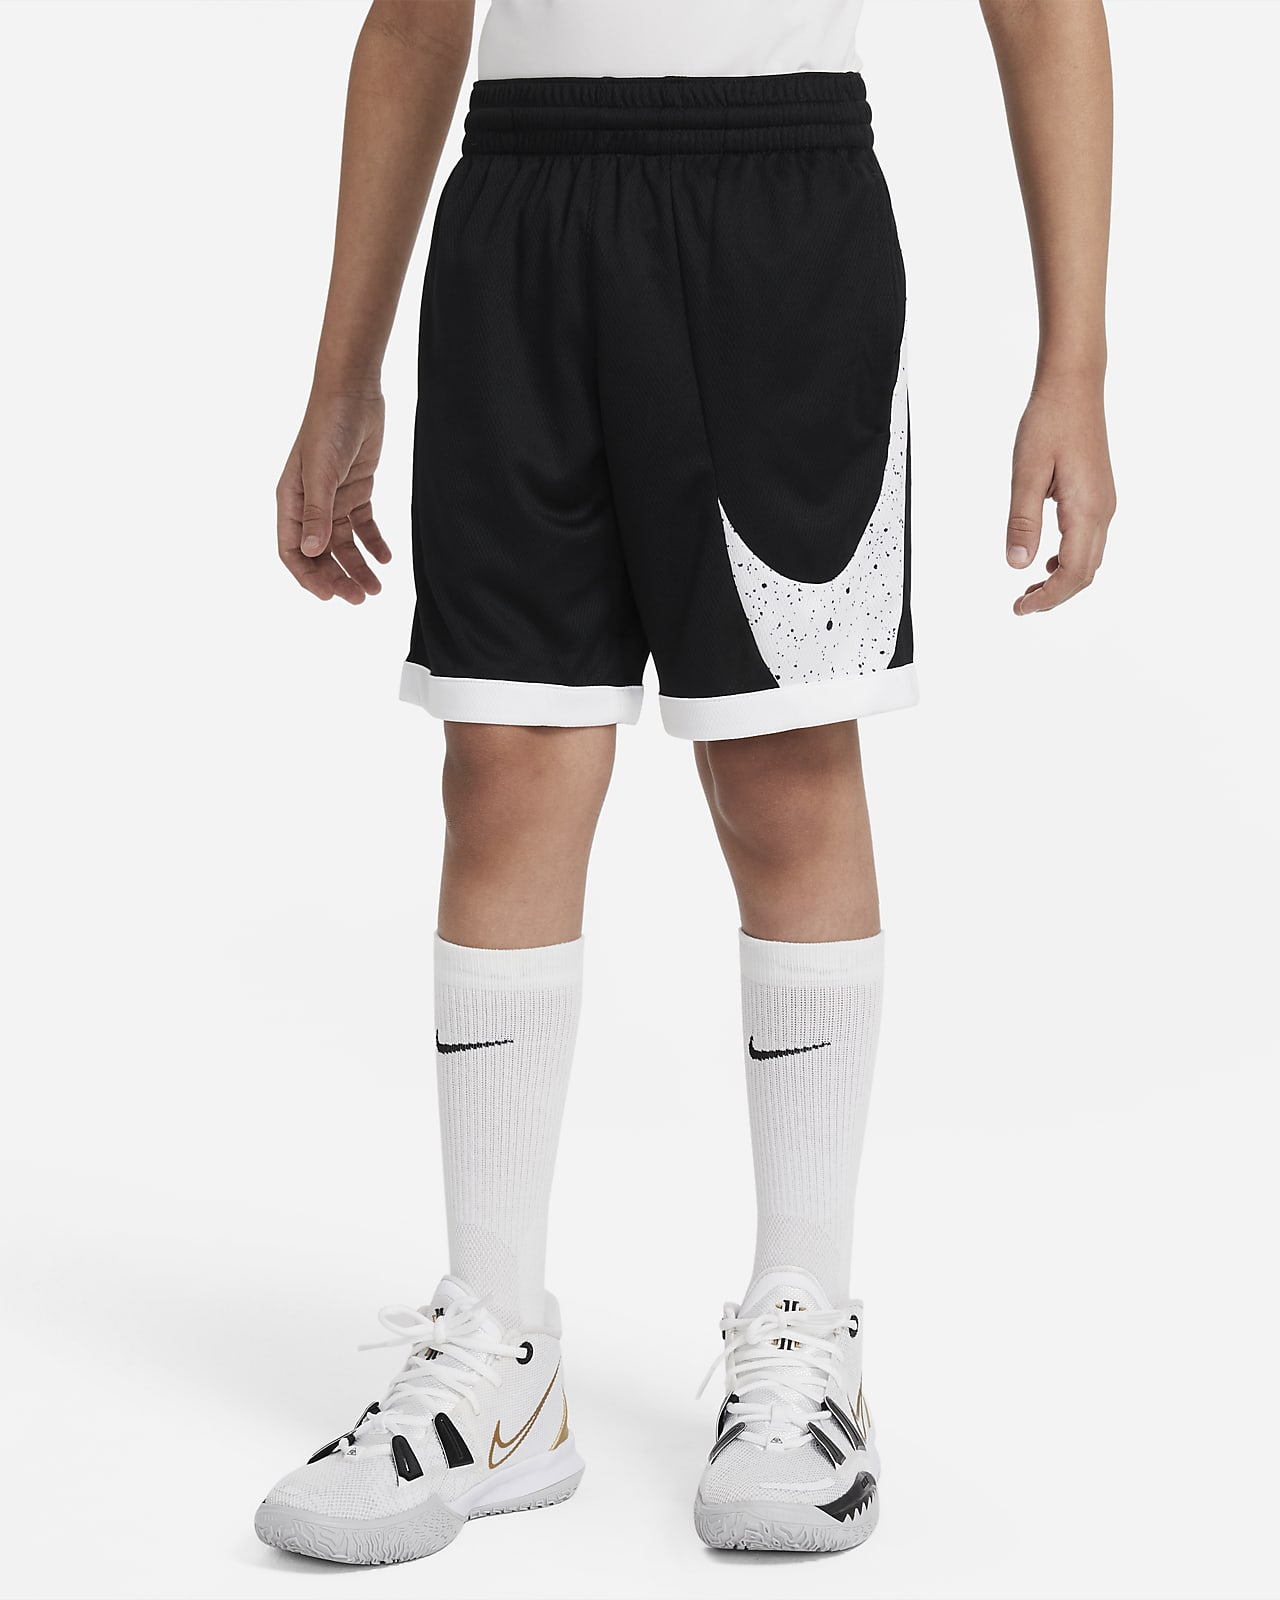 Shorts de básquetbol estampados para niño talla grande Nike Dri-FIT